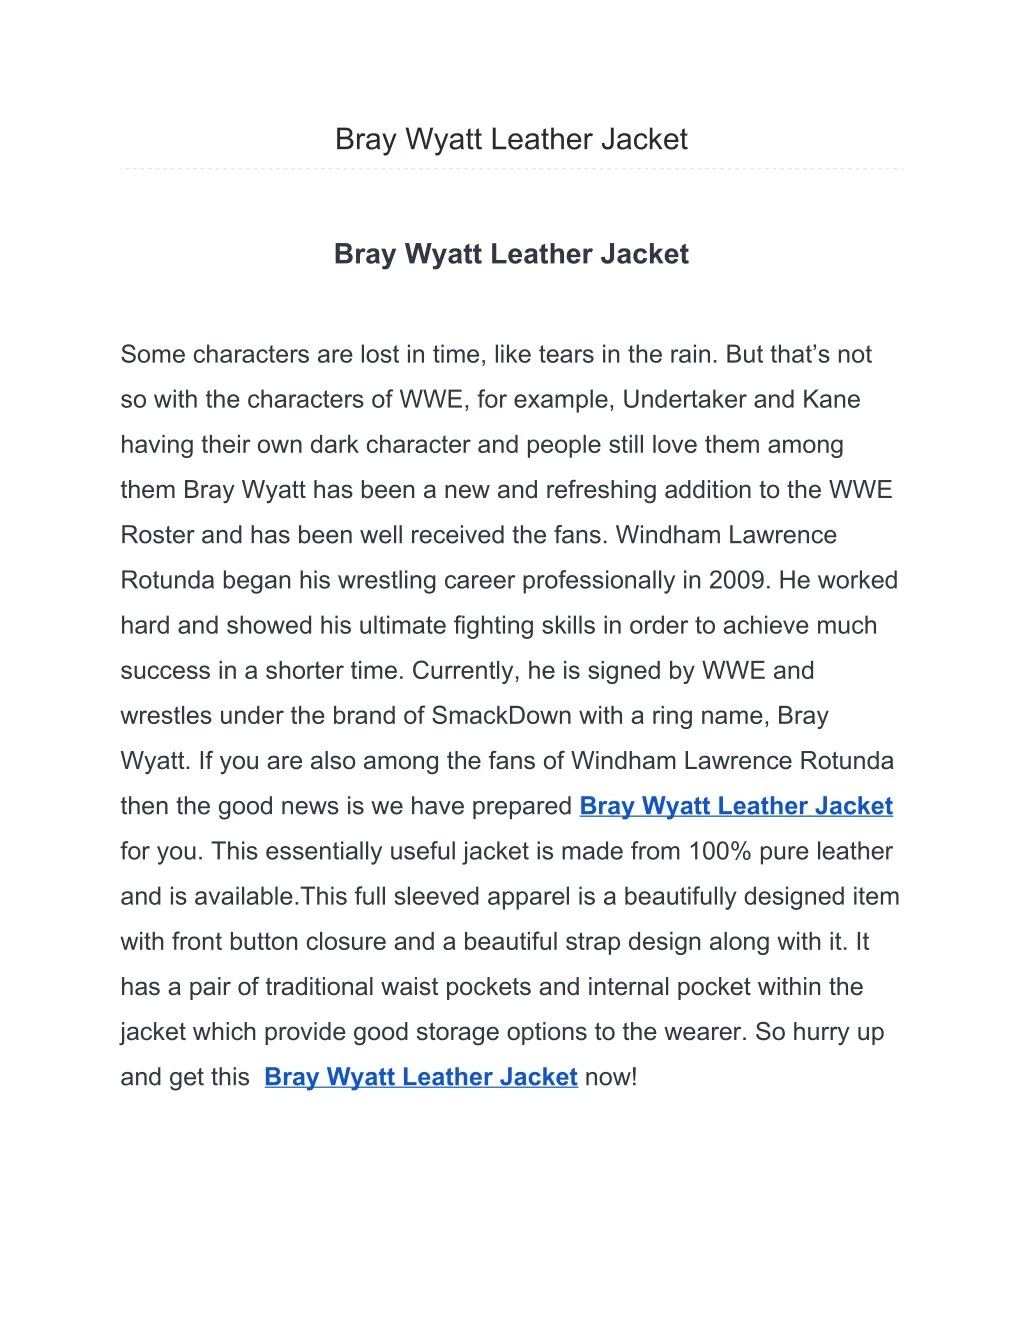 bray wyatt leather jacket